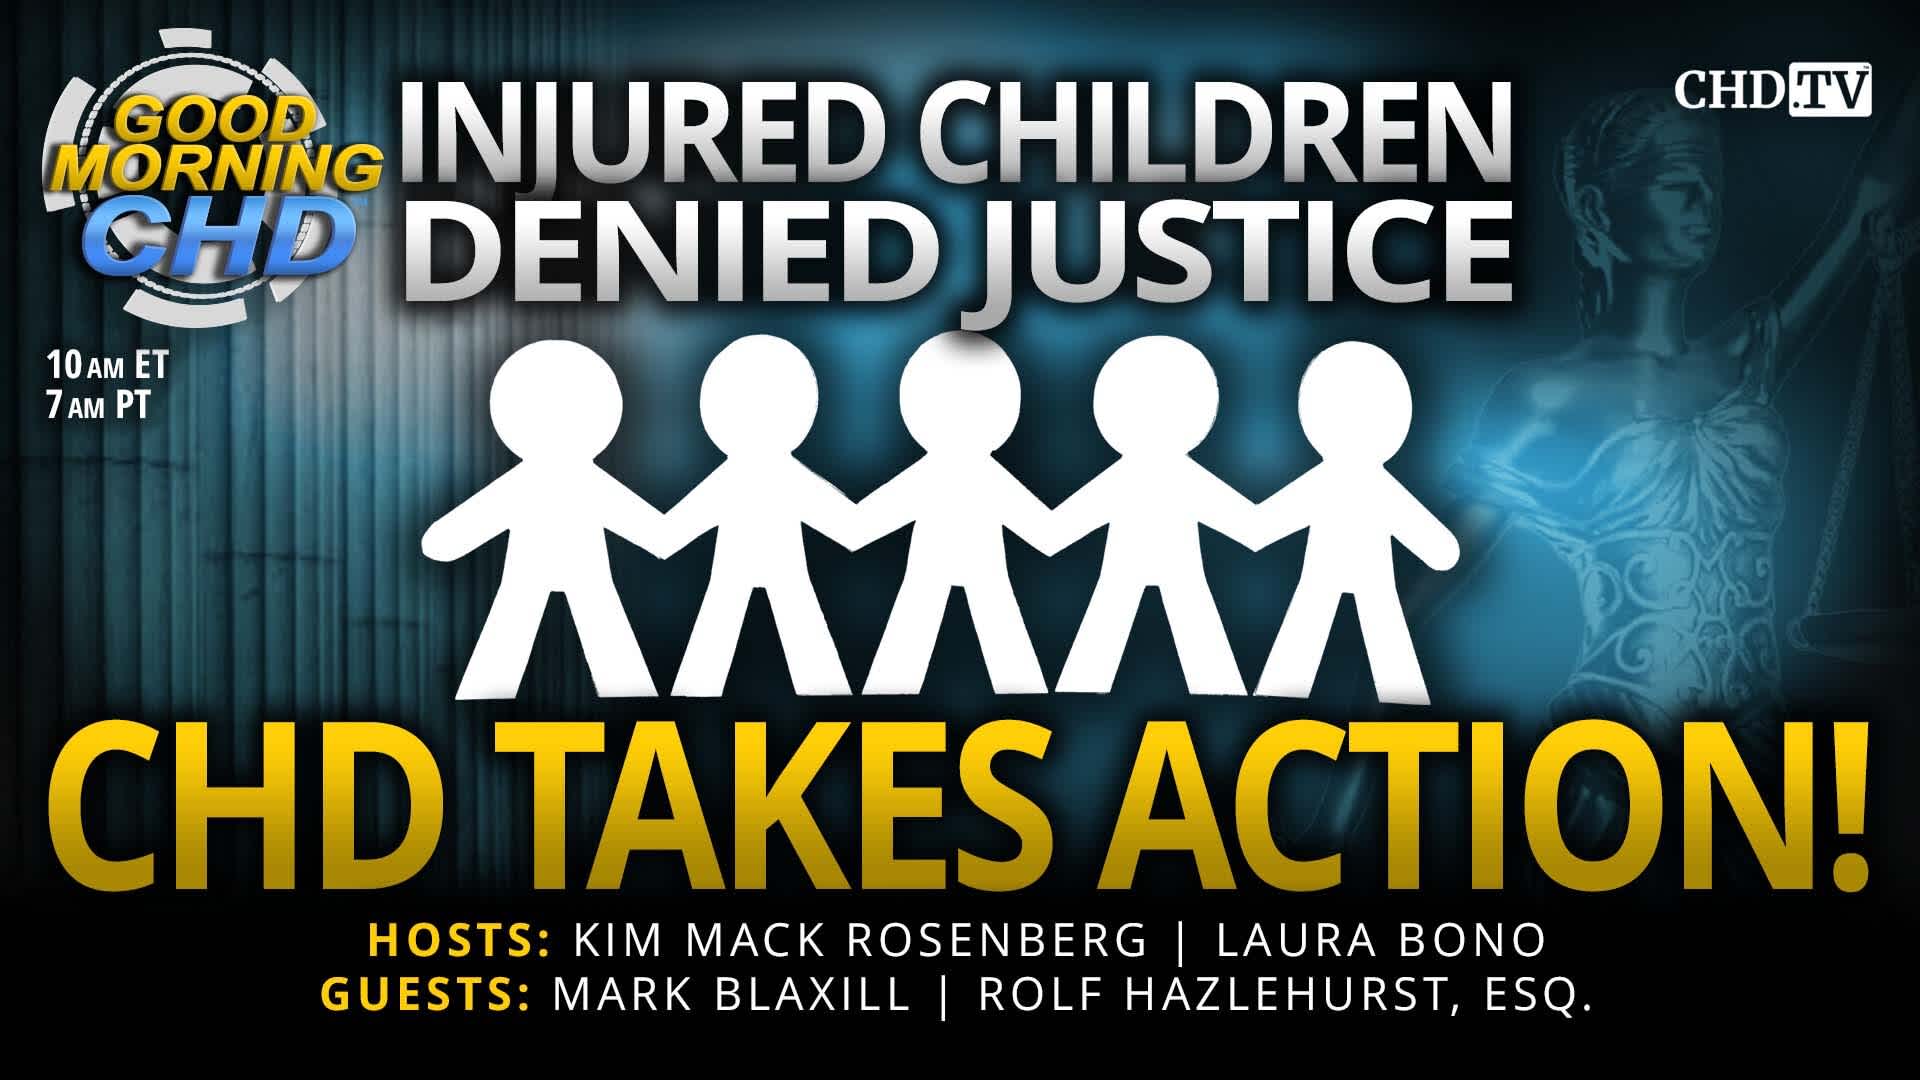 Injured Children Denied Justice - CHD Takes Action!